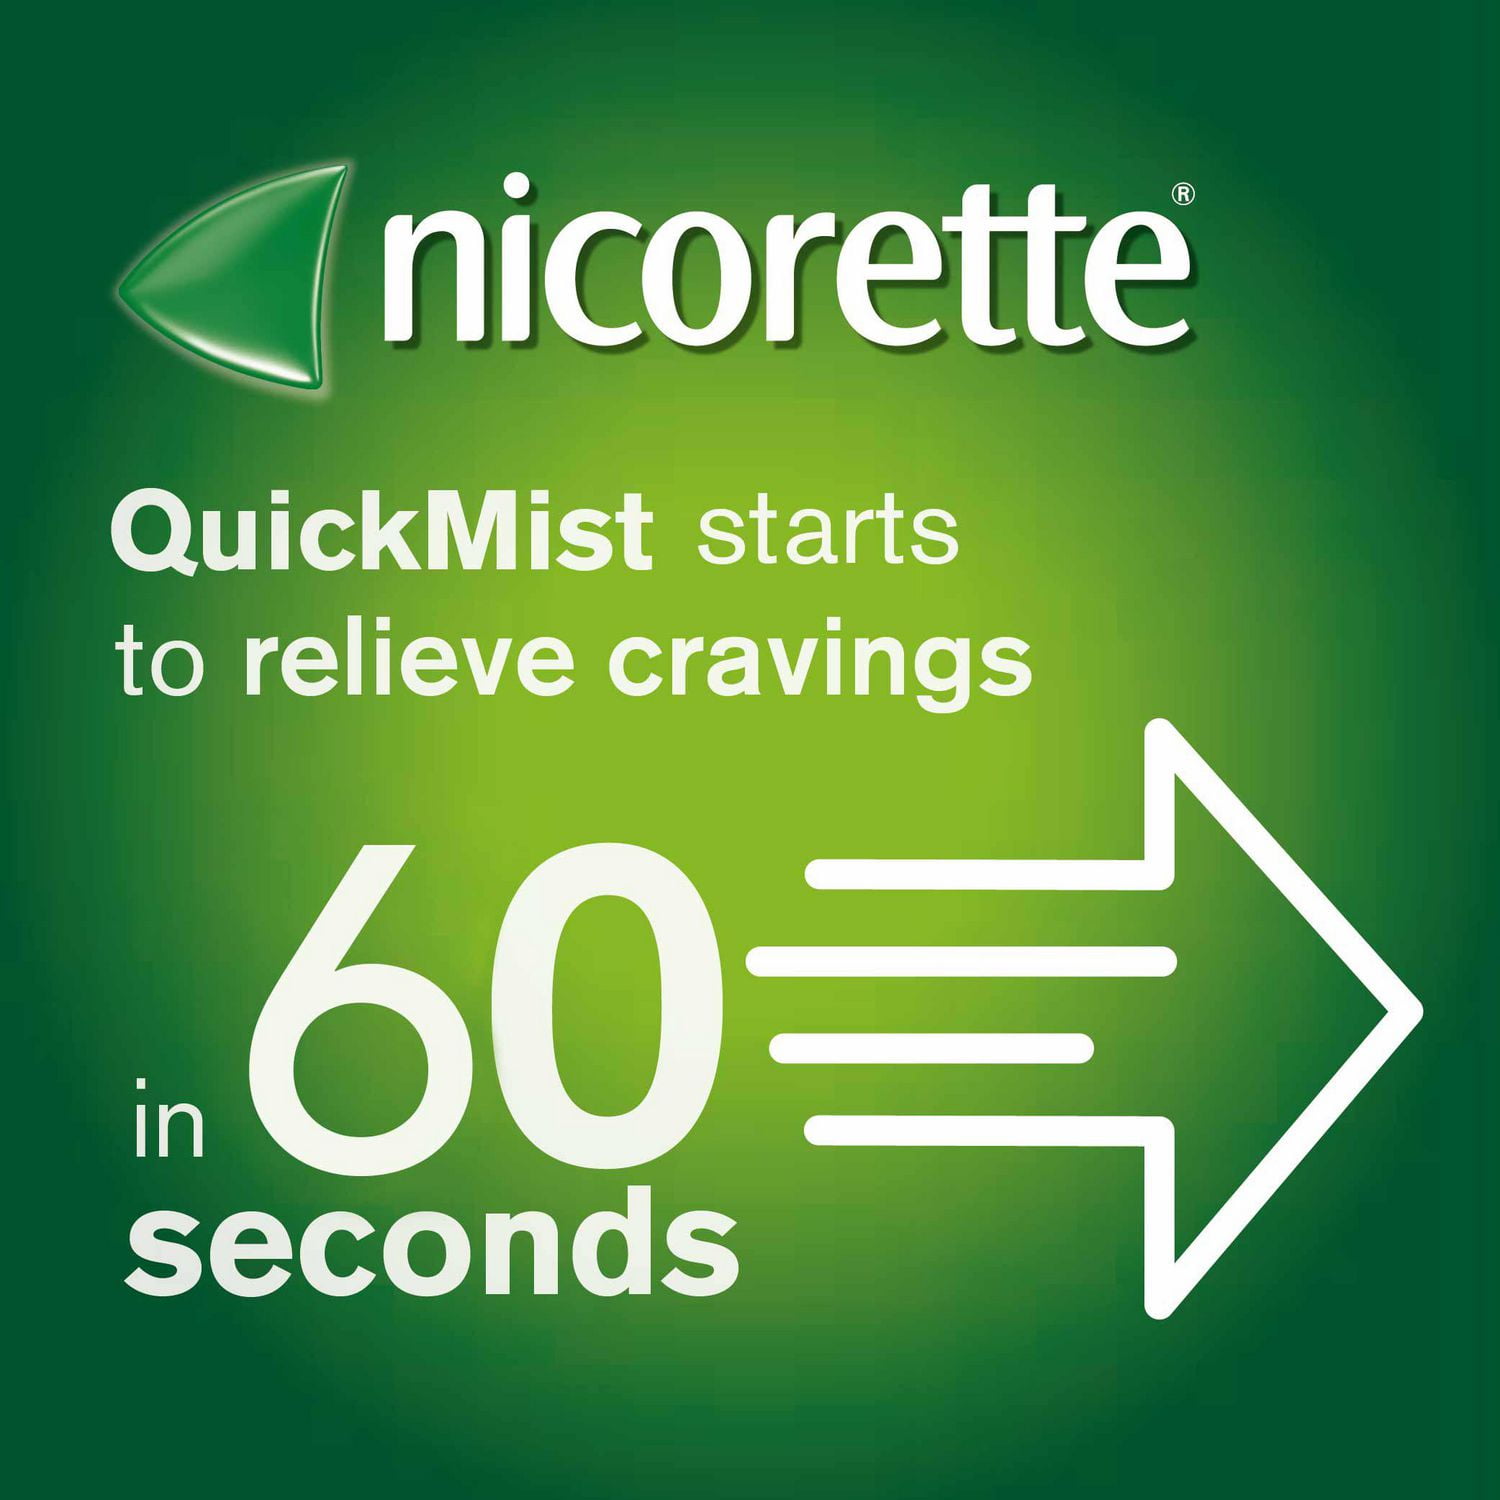 Nicorette Nicotine QuickMist Mouth Spray, Quit Smoking and Smoking